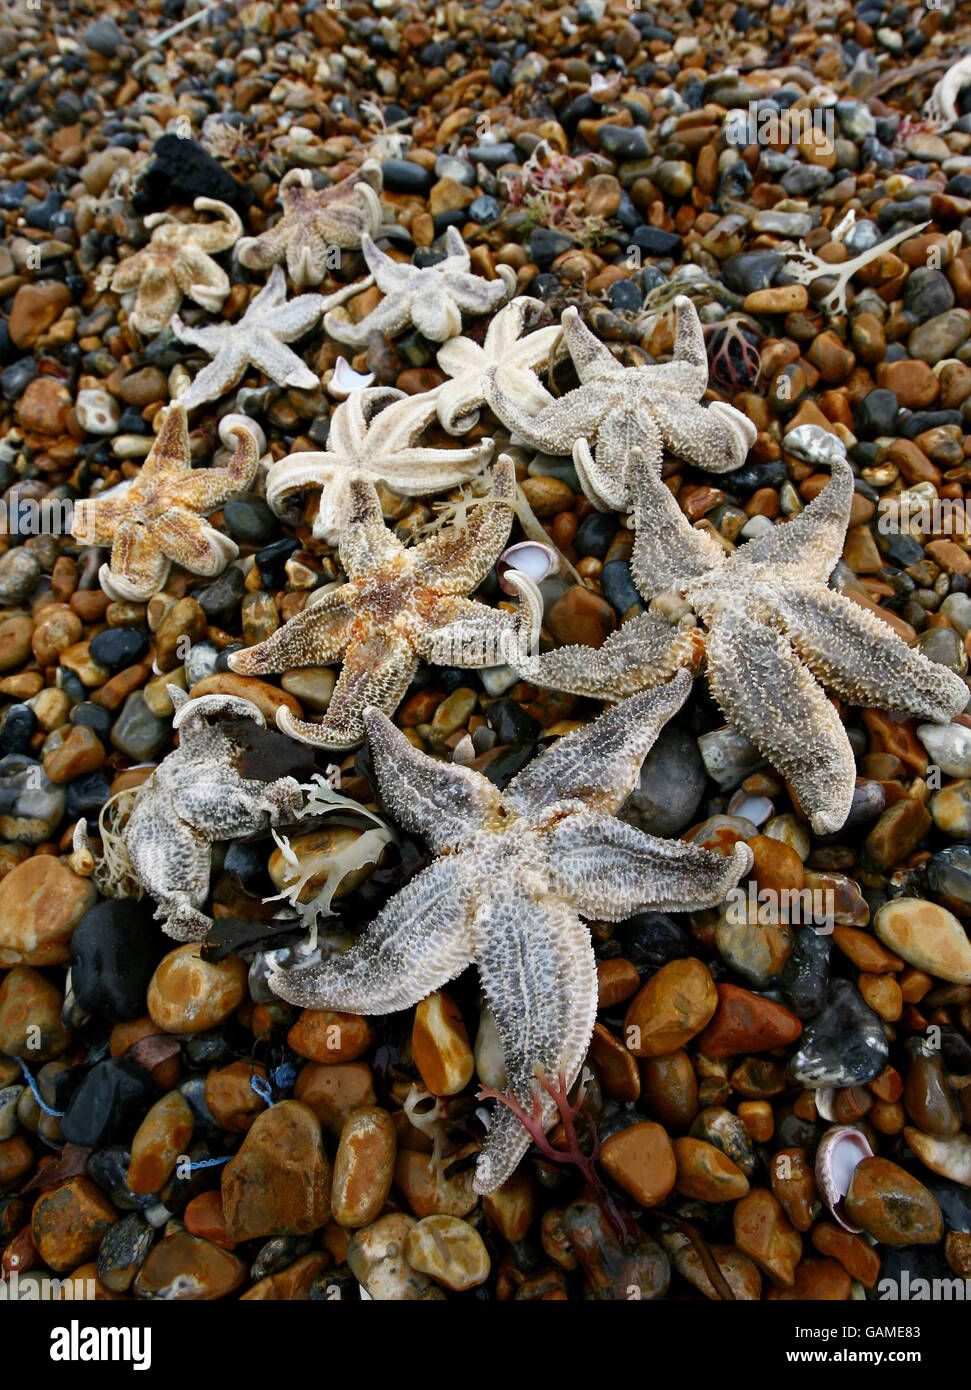 Seesterne liegen ausgewaschen am Brighton Beach in East Sussex Days, nachdem vor kurzem vor der Küste von Kent große Mengen gefunden wurden. Stockfoto